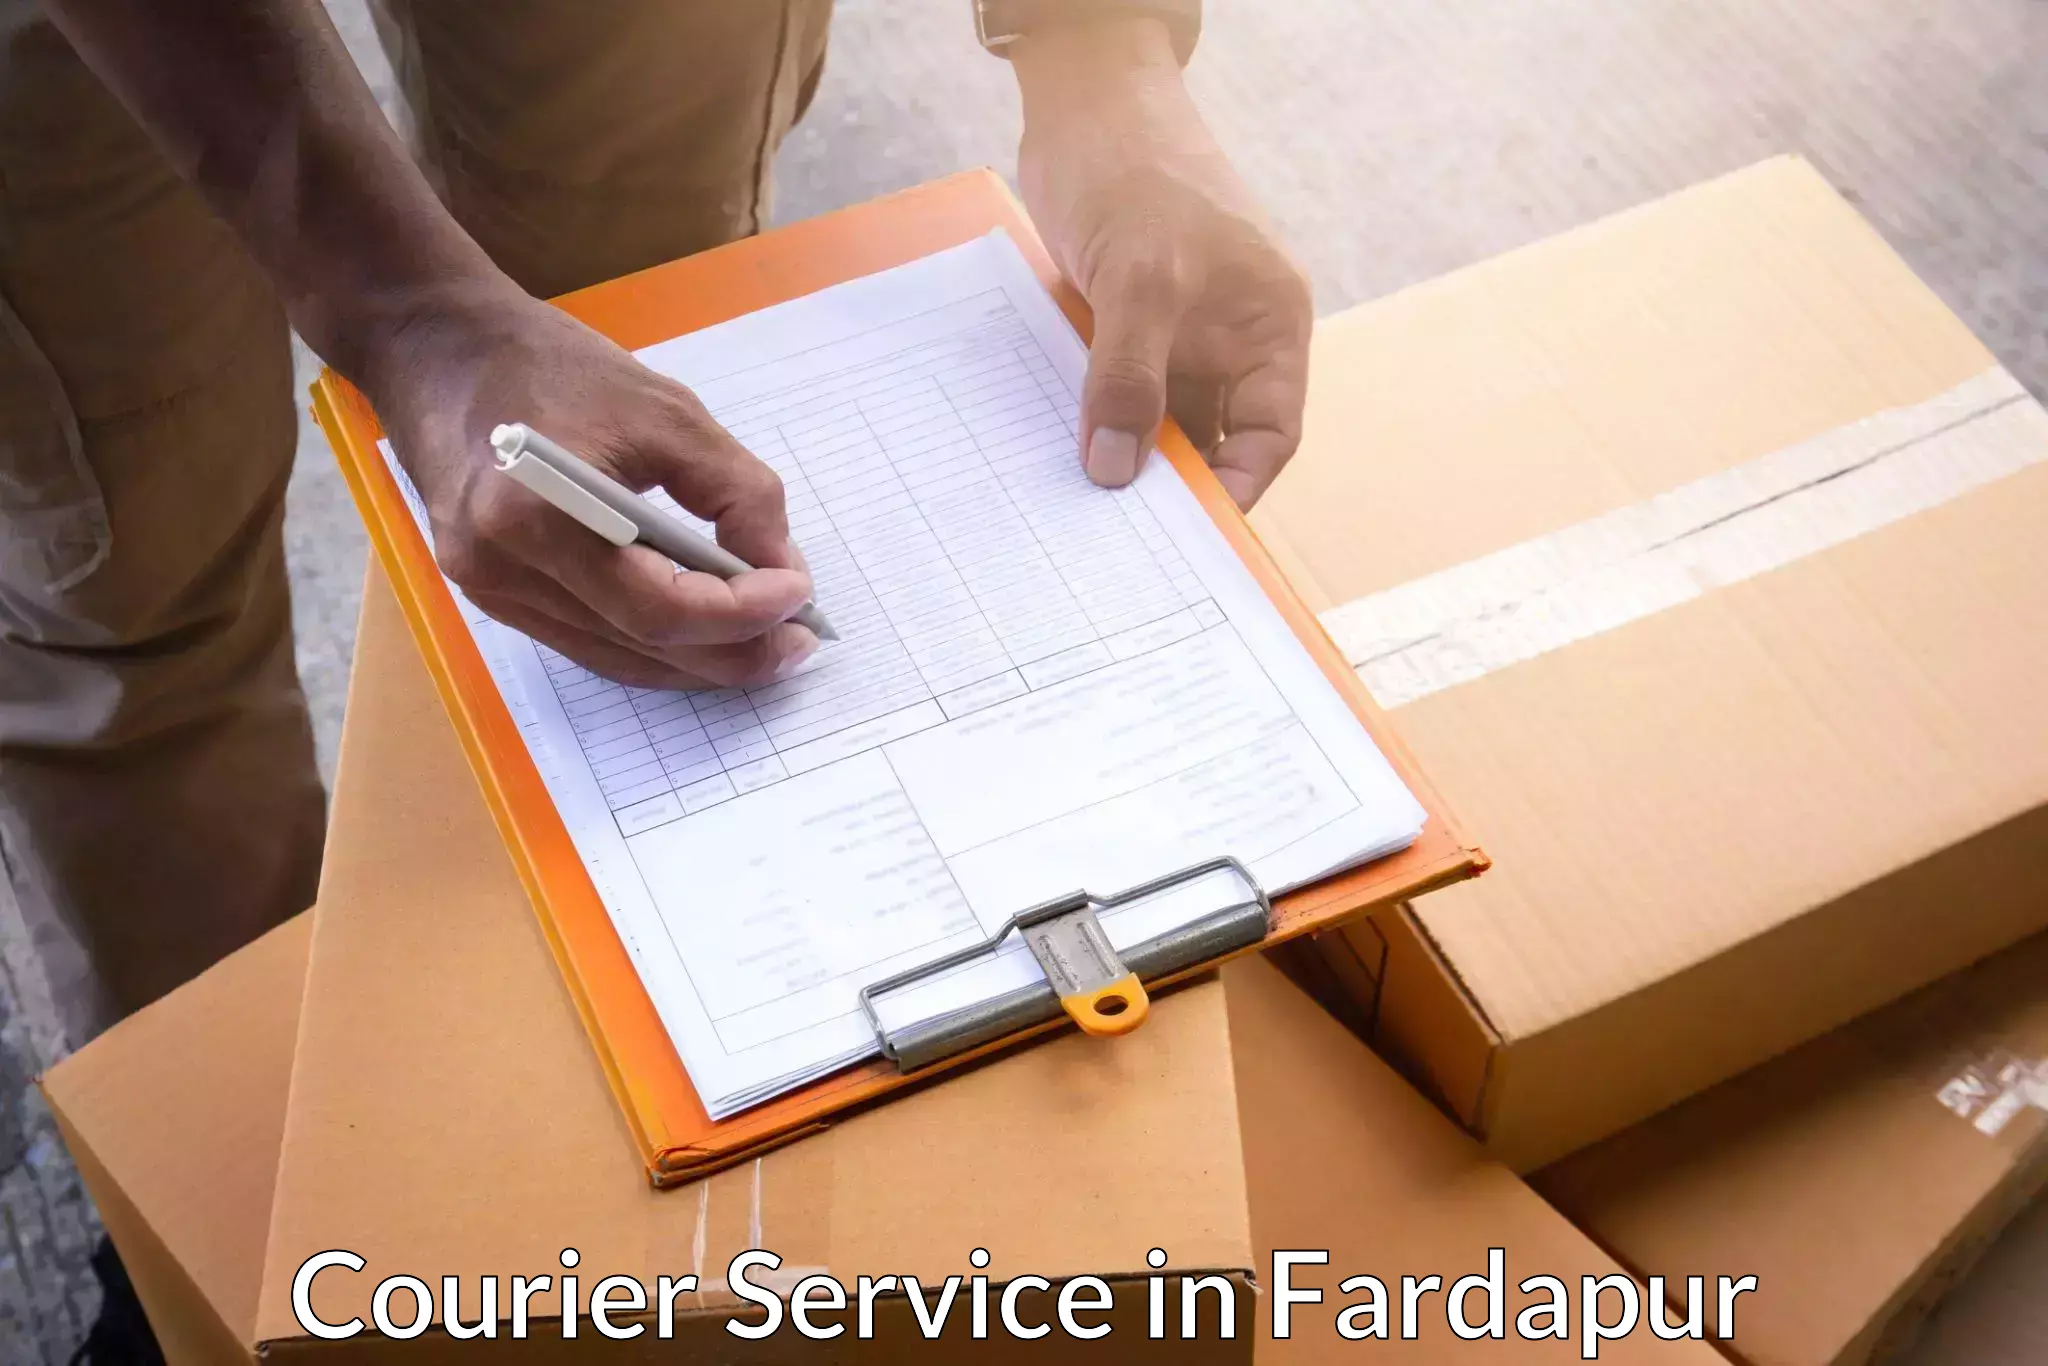 Courier rate comparison in Fardapur